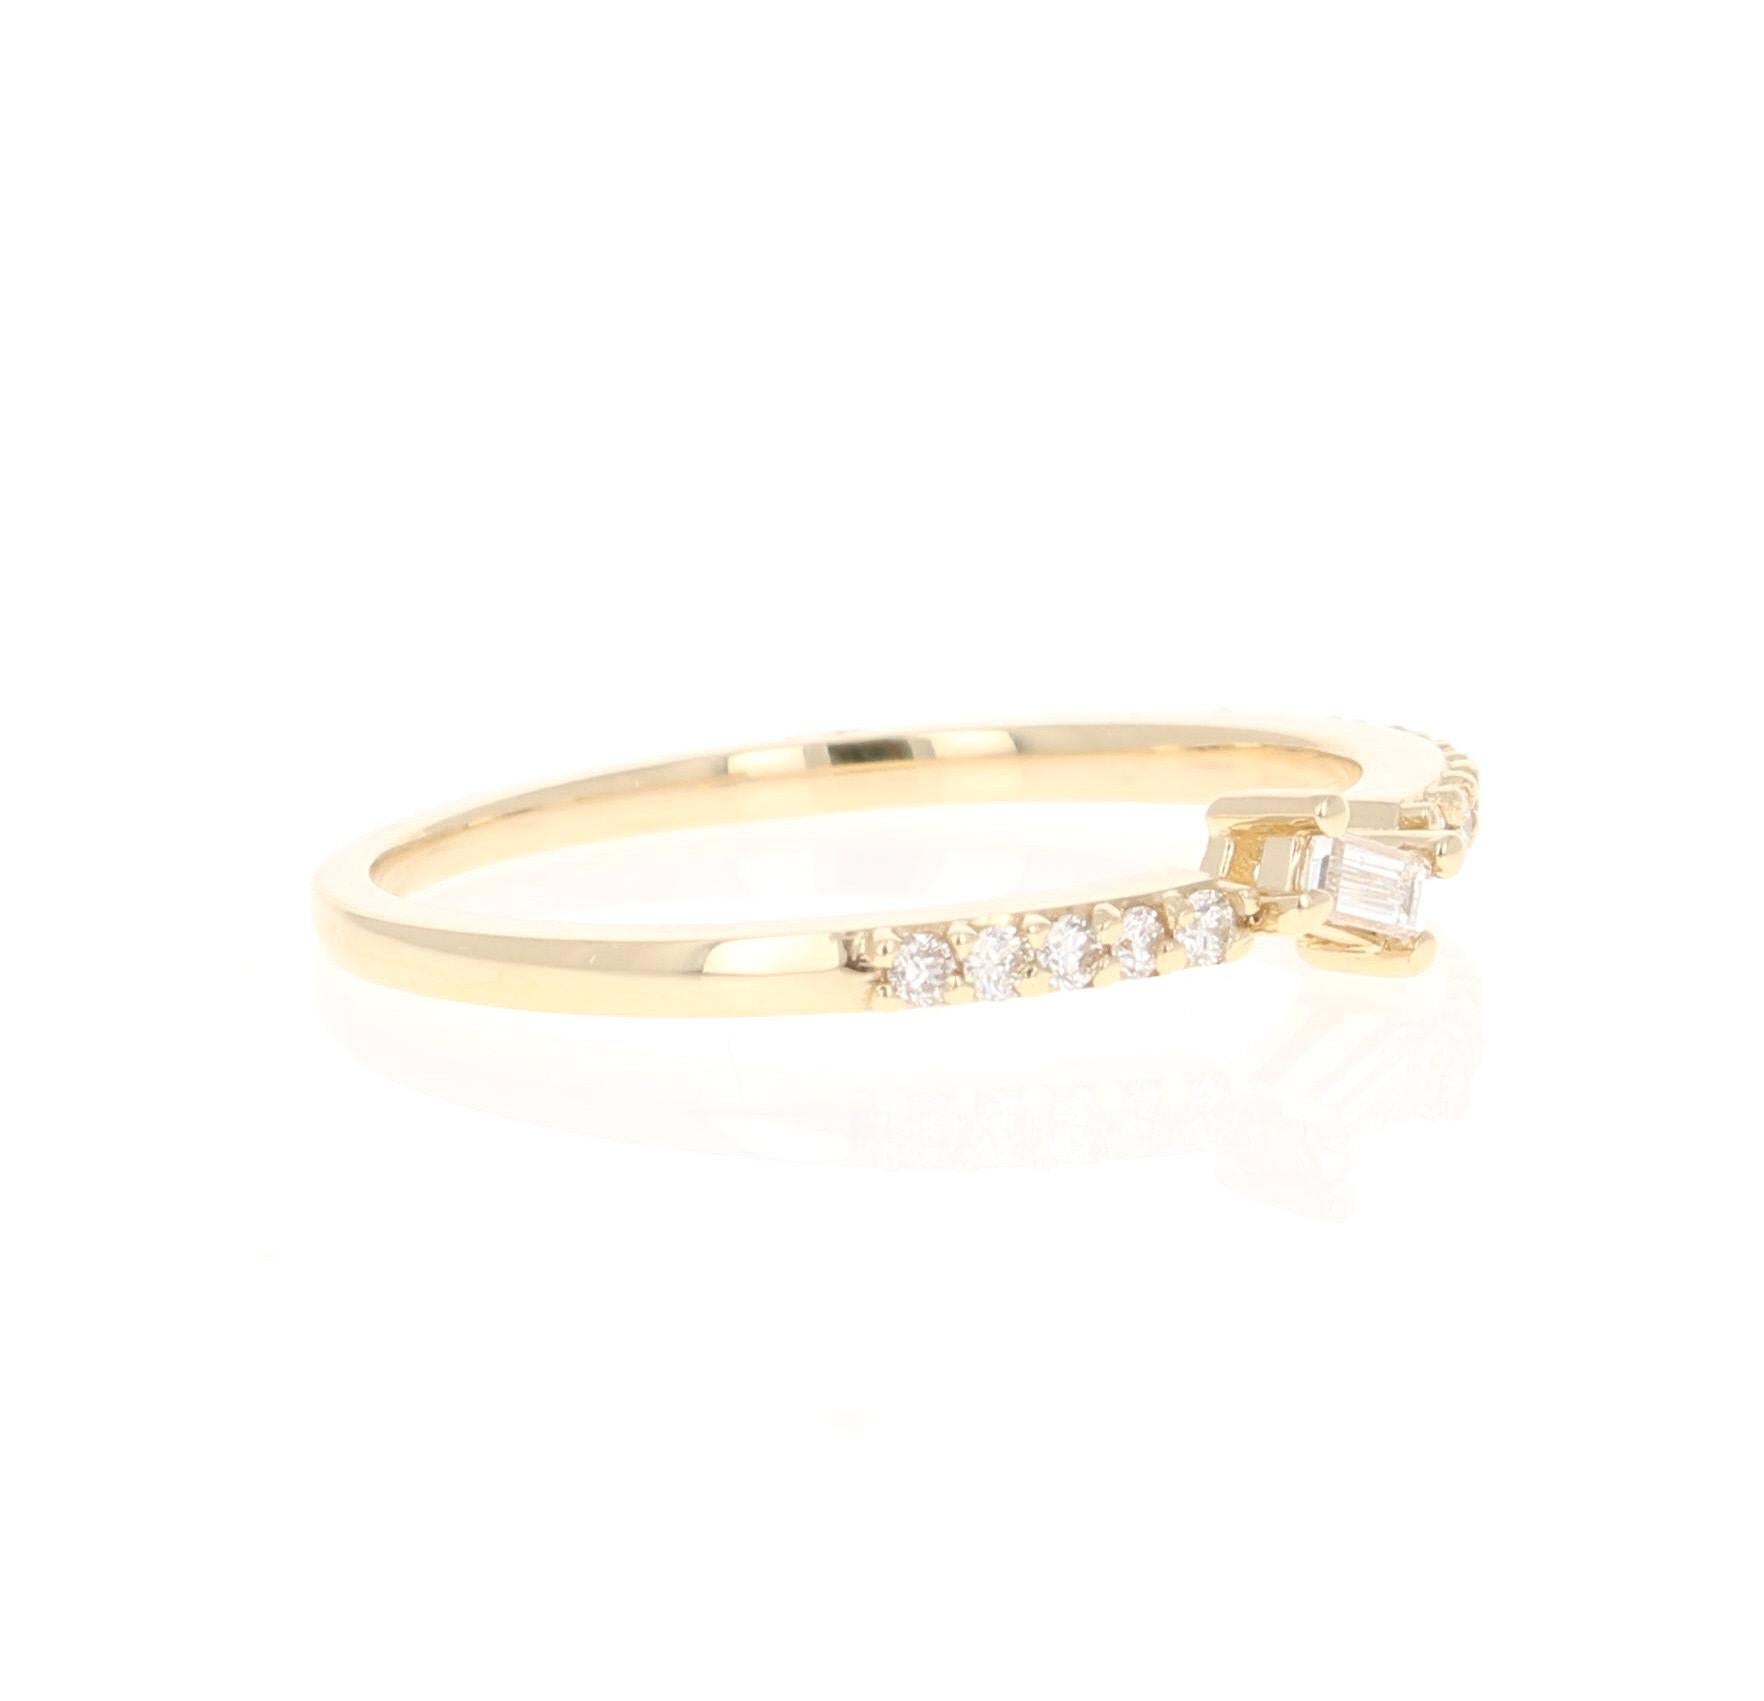 Einzigartiges und süßes Band, das als einzelnes Band getragen oder mit anderen Bändern in anderen Goldfarben gestapelt werden kann! 

Dieser Ring hat einen Diamanten im Baguetteschliff mit einem Gewicht von 0,07 Karat (Reinheit: VS, Farbe: H) und